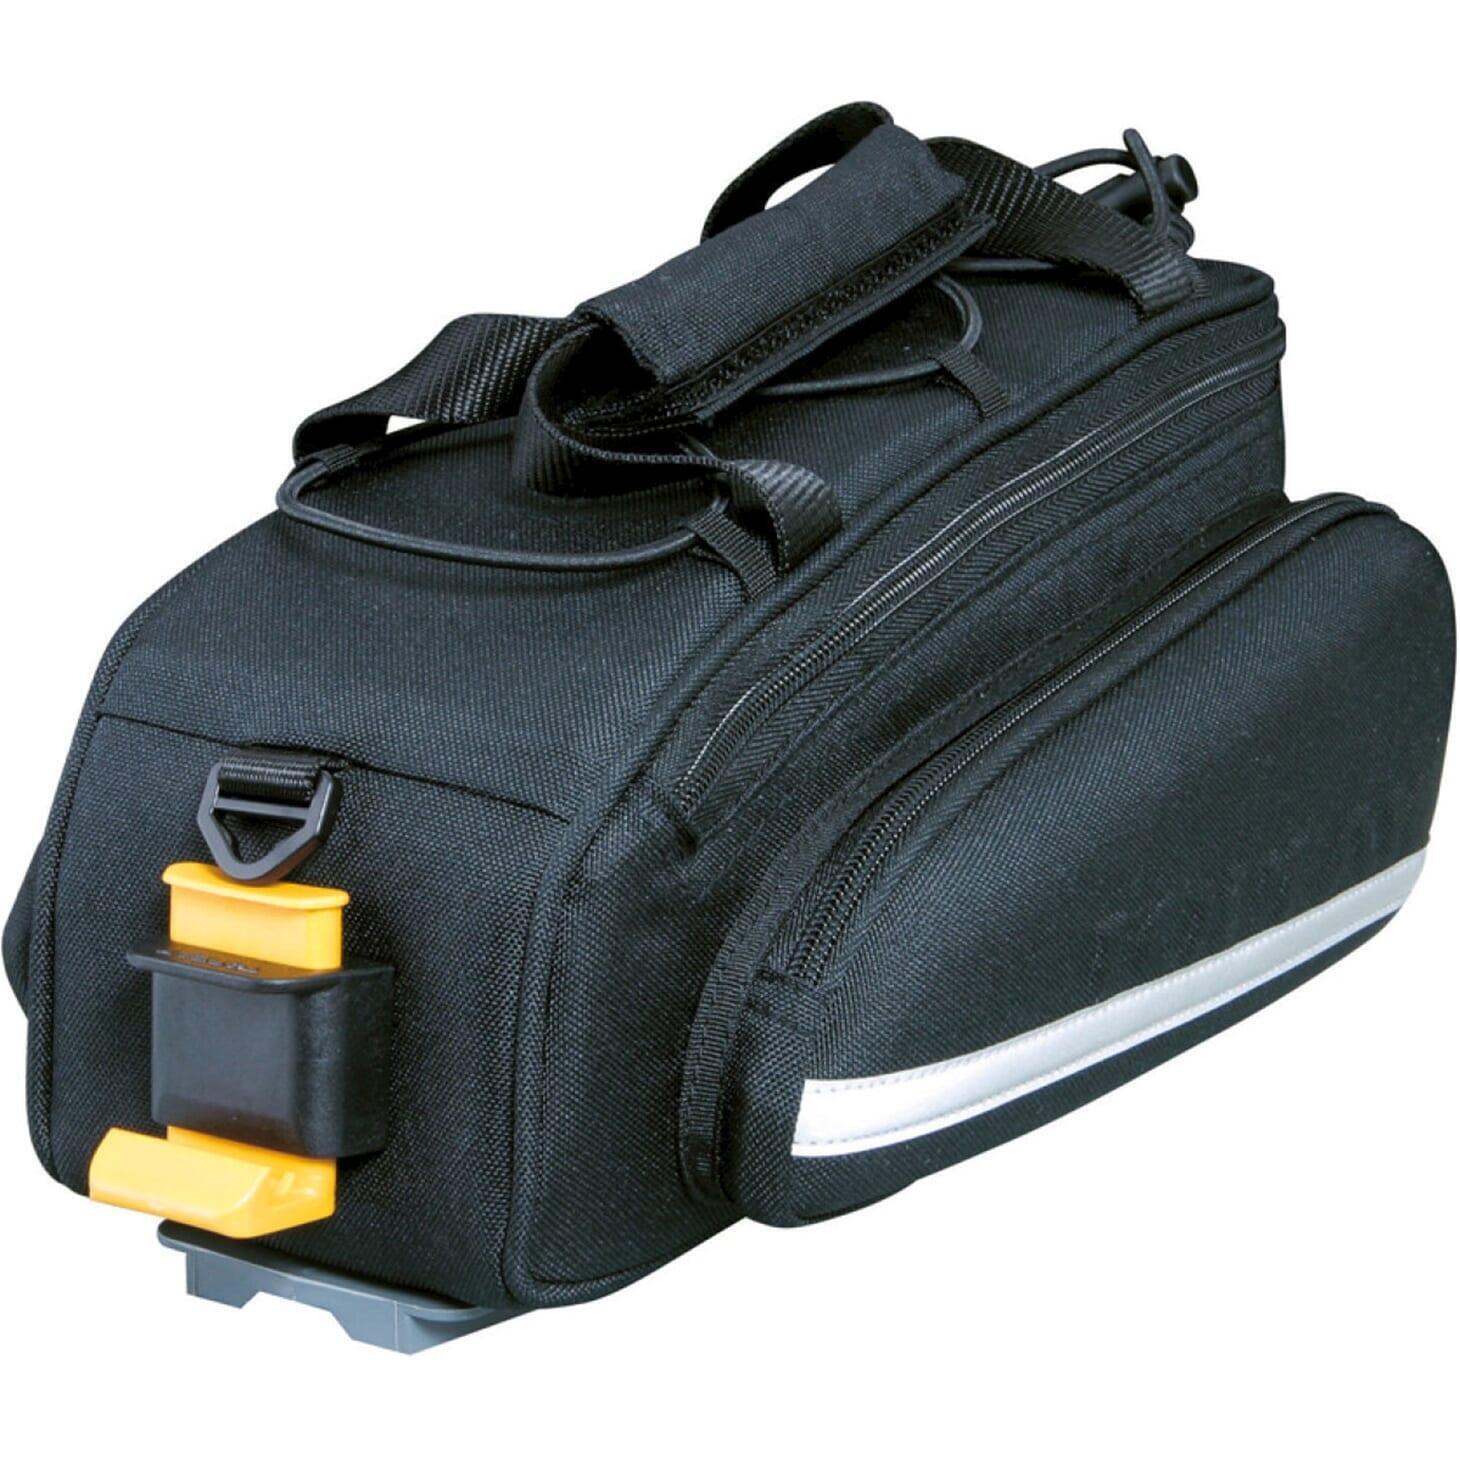 Сумка Topeak RX Trunk Bag EX сумка для багажника, черный